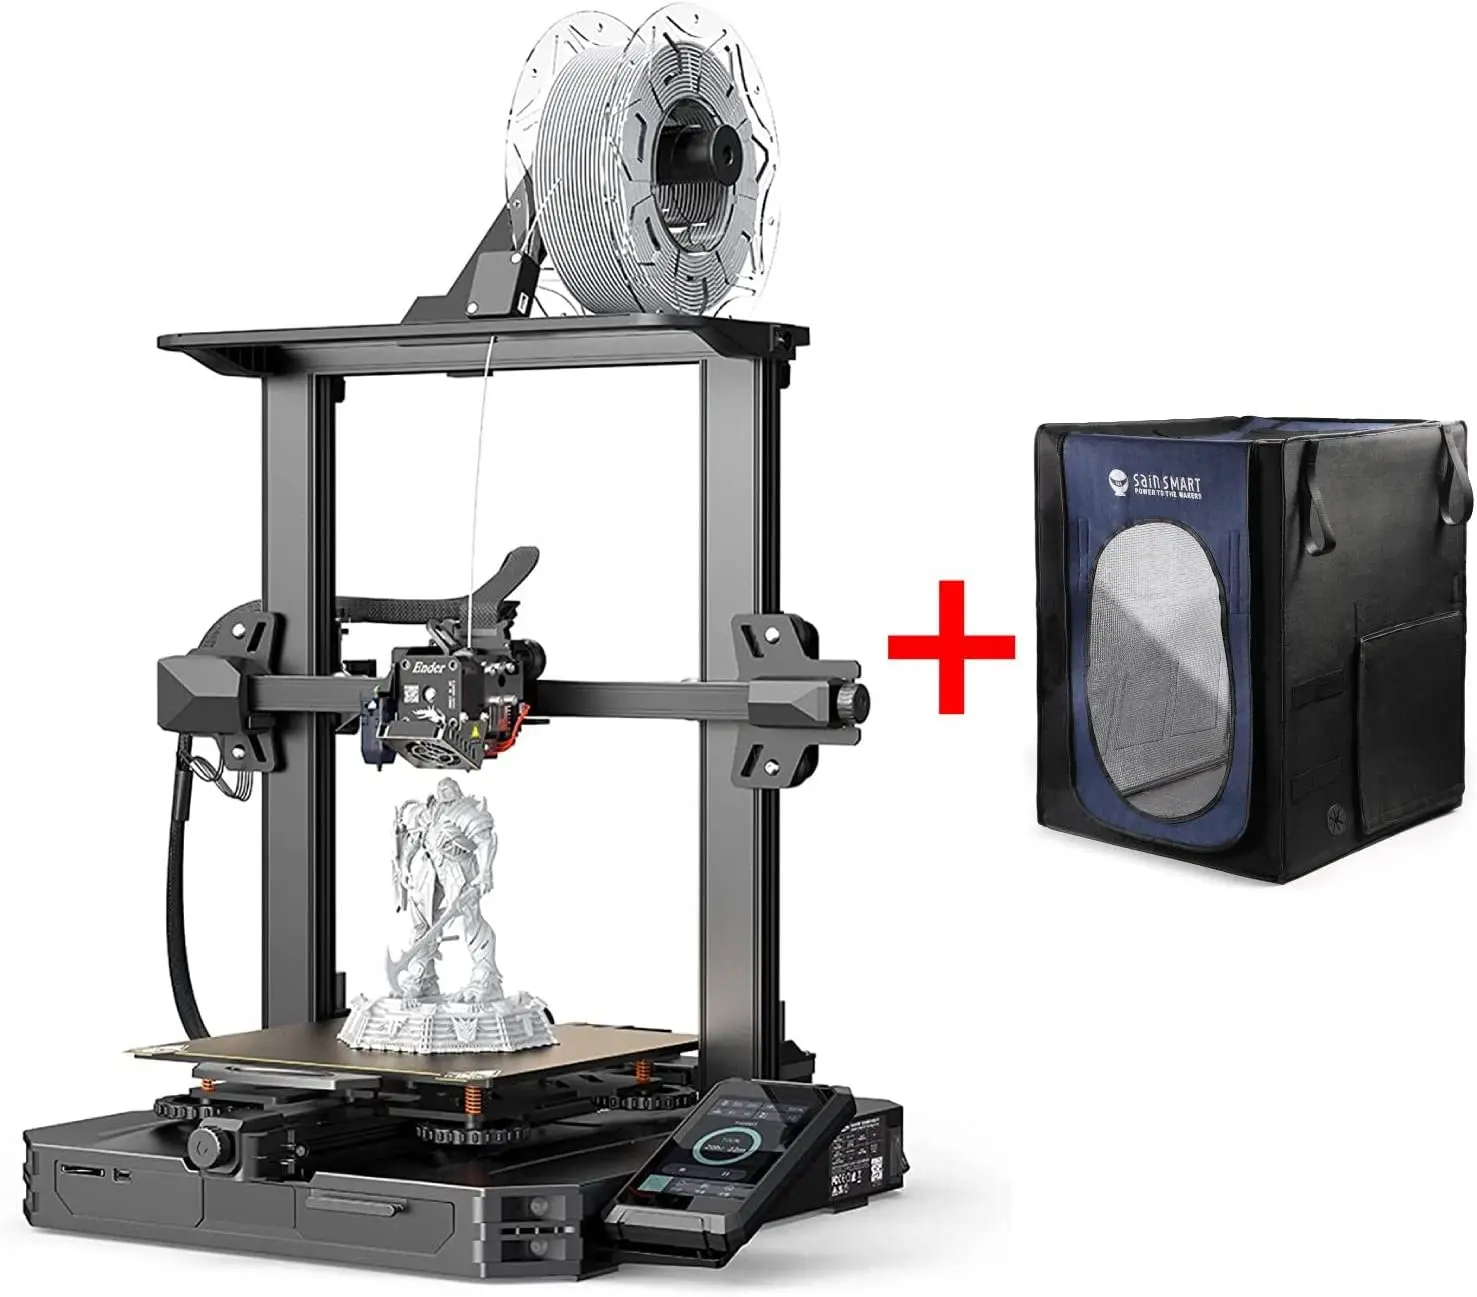 

Официальный большой корпус для 3D-принтера Creality Ender 3 S1 Pro и SainSmart, 20,9 дюйма x 24,2 дюйма x 28,9 дюйма